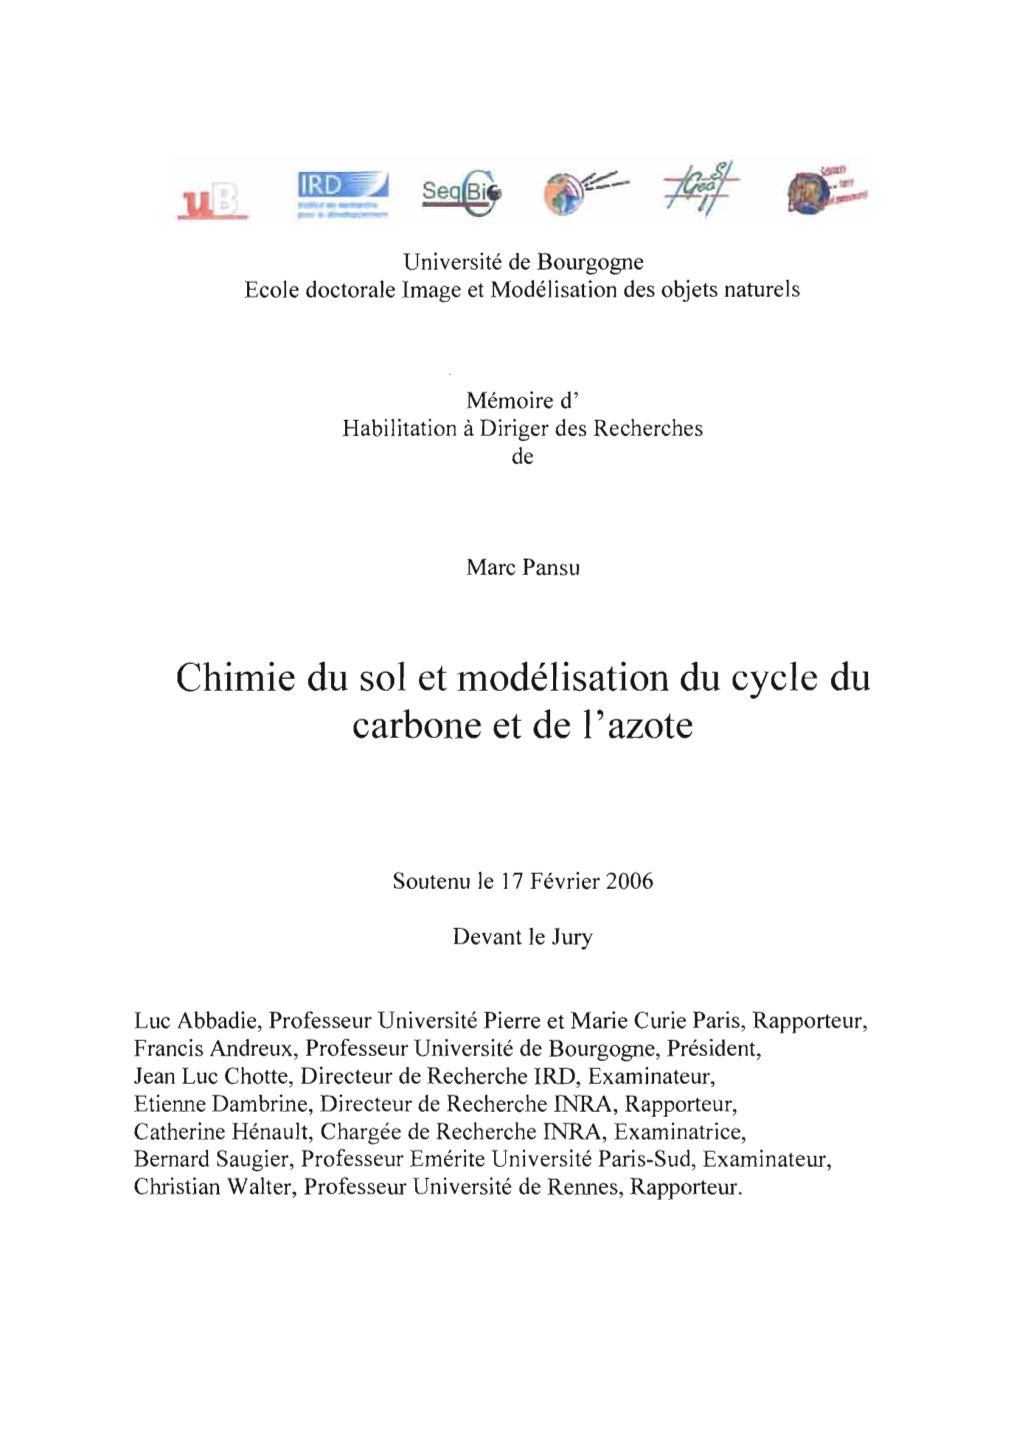 Chimie Du Sol Et Modélisation Du Cycle Du Carbone Et De L'azote », Soutenu Le 17 Février 2006 À Dijon